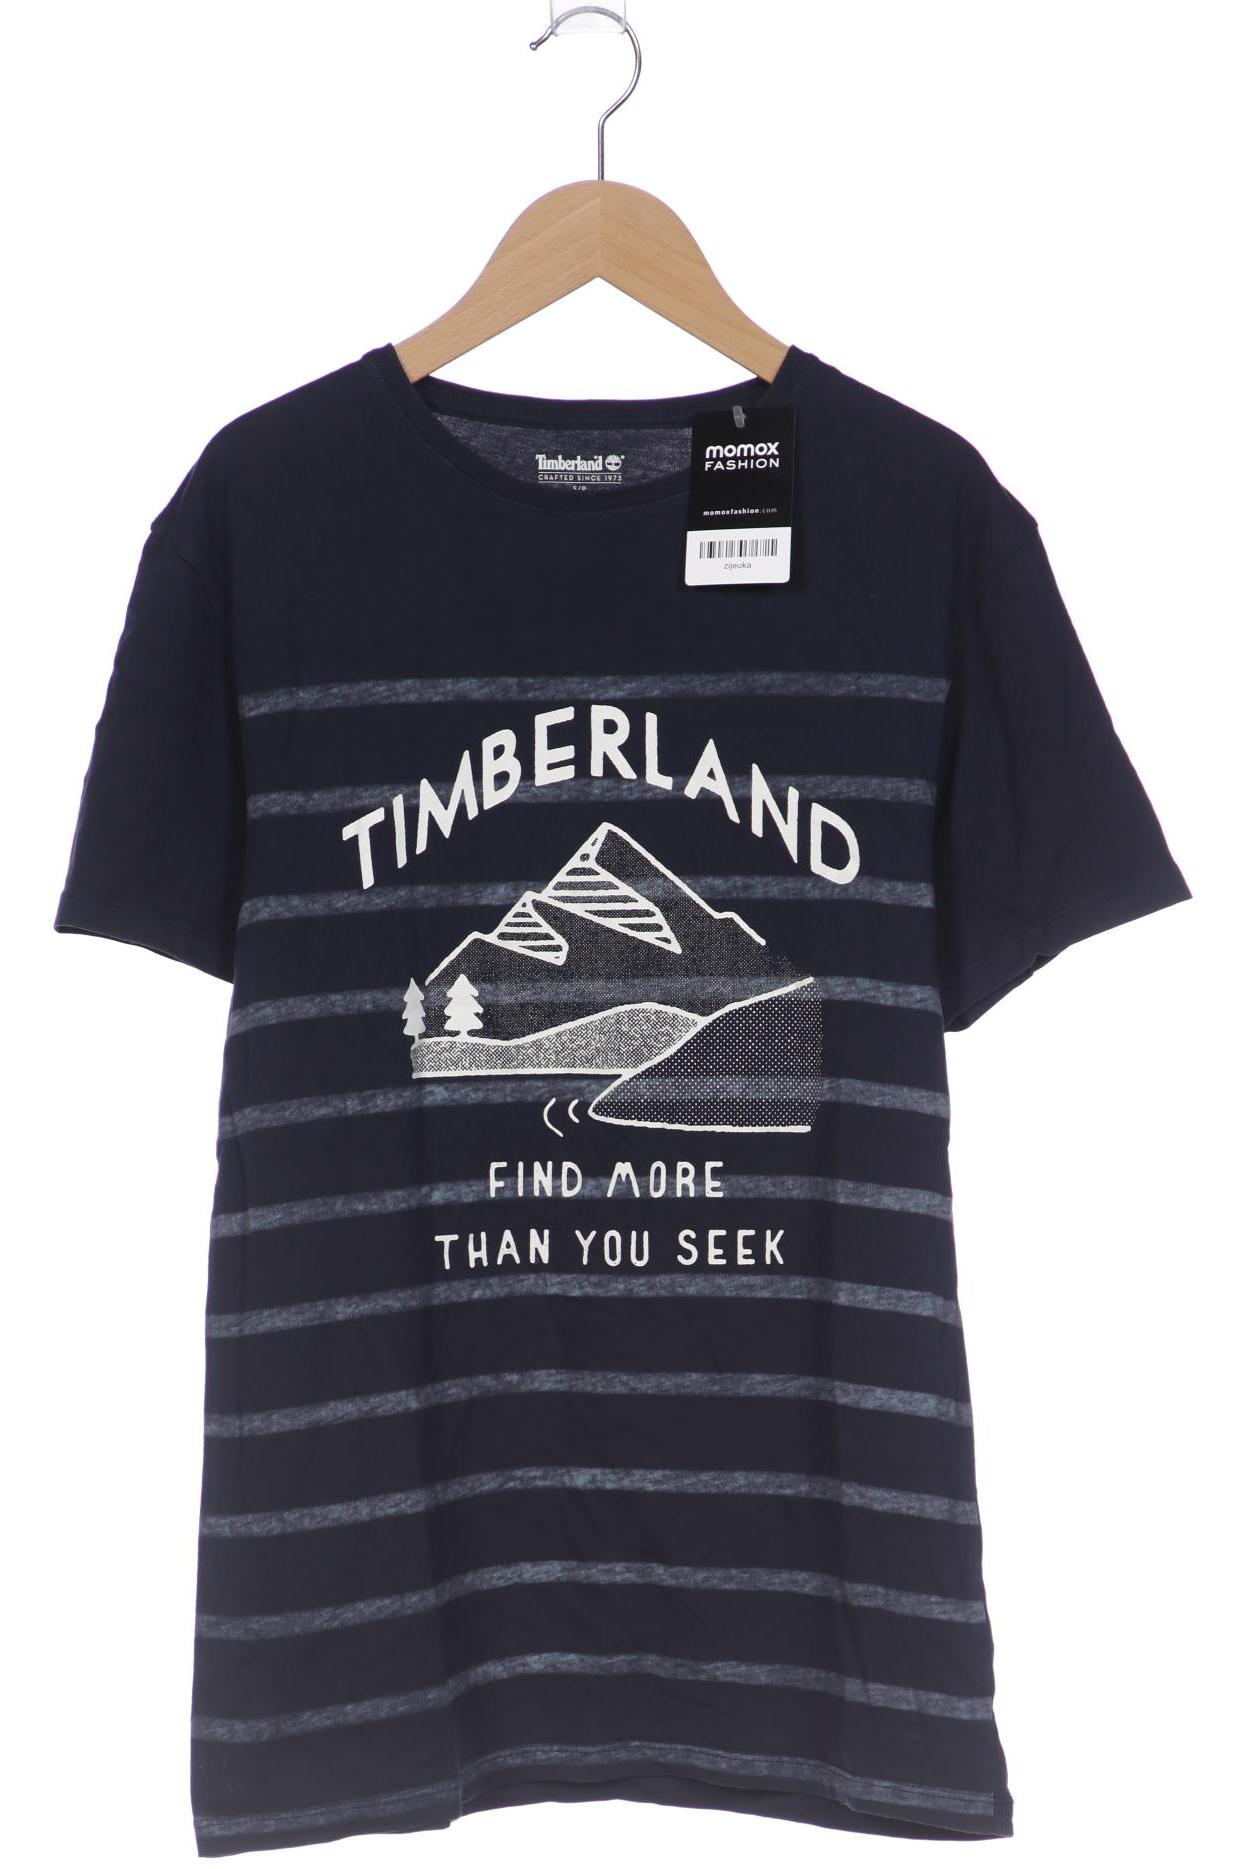 Timberland Herren T-Shirt, marineblau von Timberland